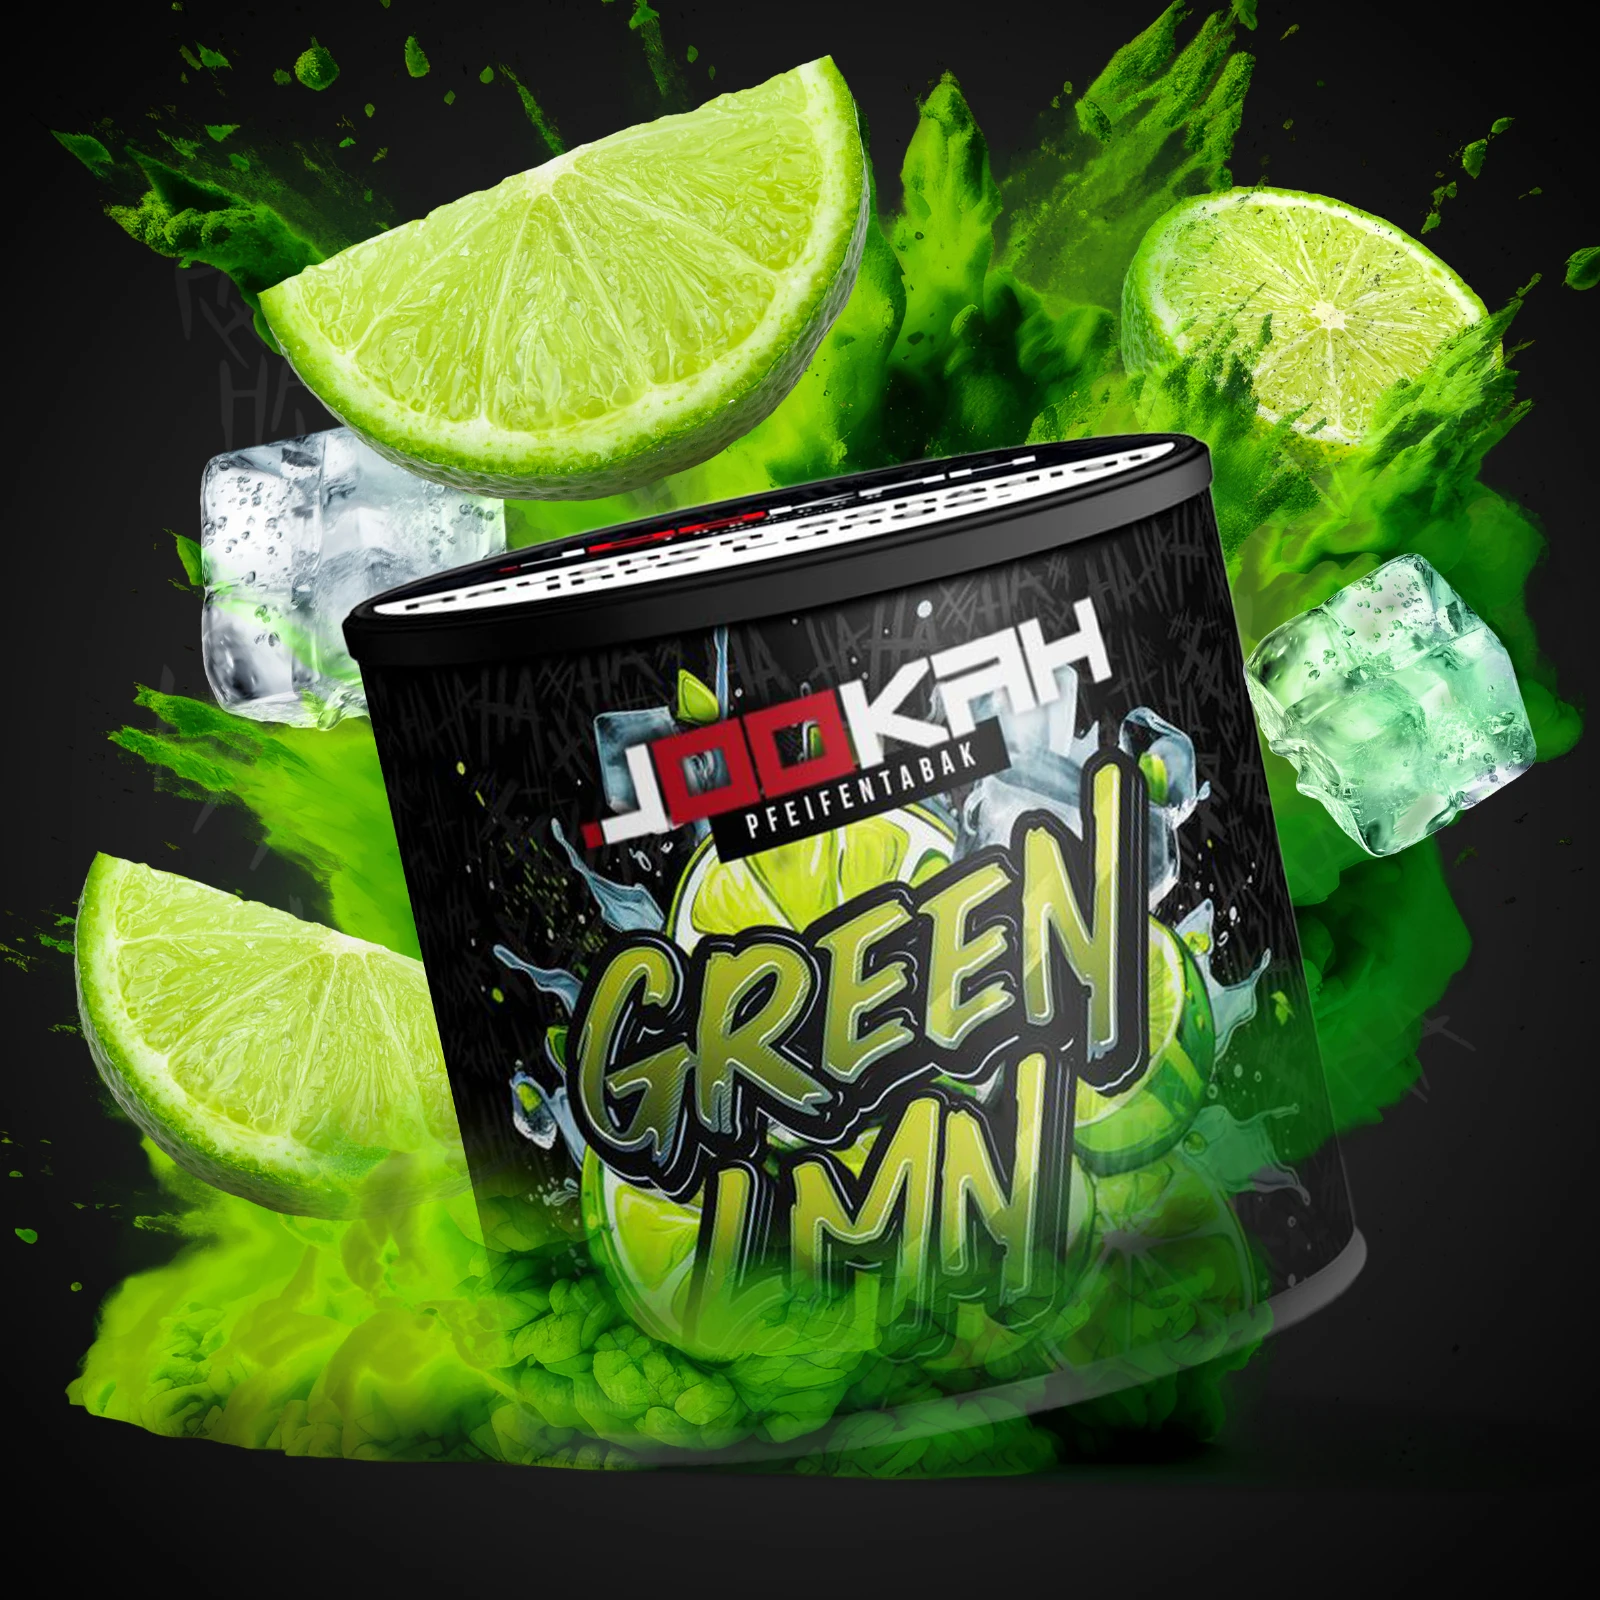 Jookah Dry Base Pfeifentabak Green LMN 100 g | Online 1